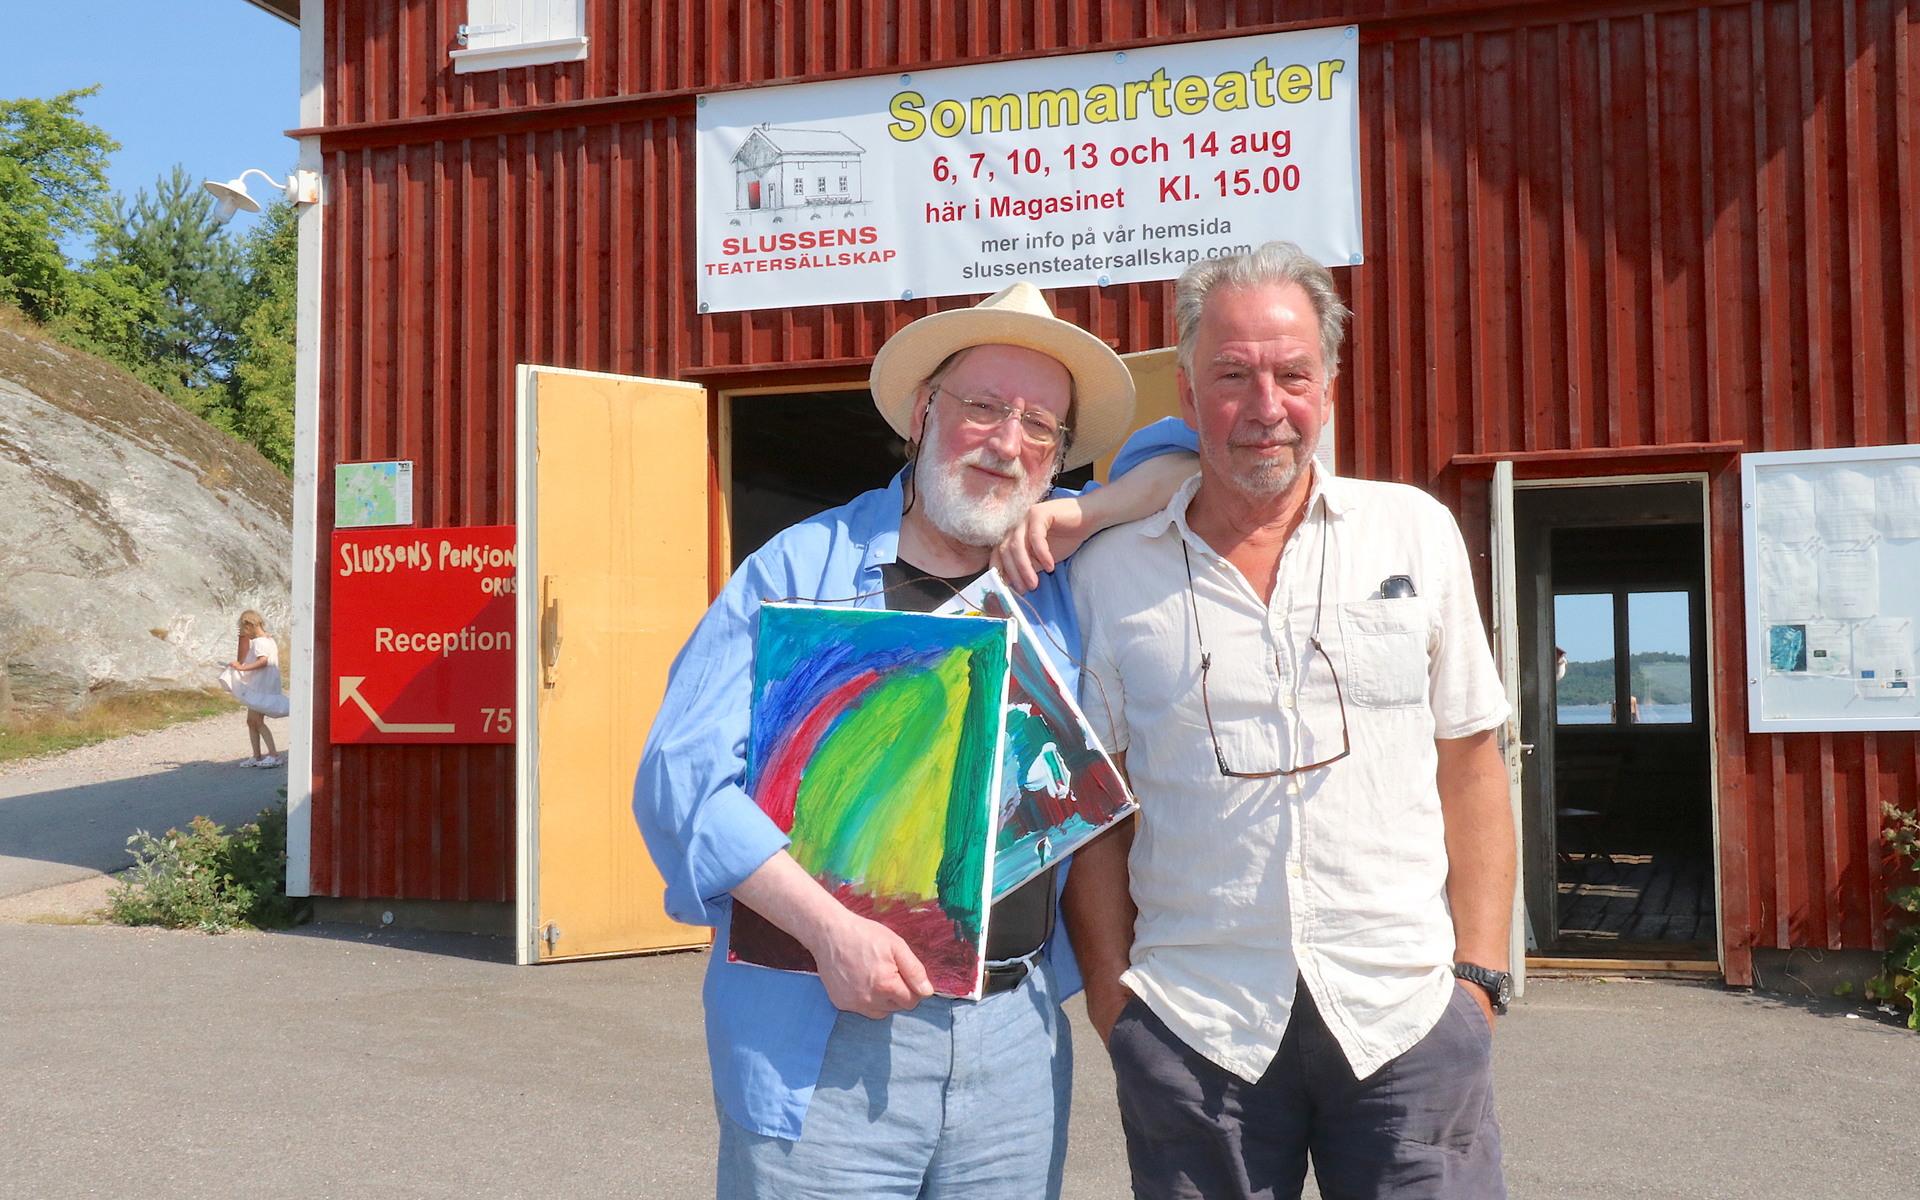 Roger Janerfors och Anders B Jonasson är båda upphovsmän och regissörer till sommarspelet i och utanför magasinet i Slussen. Två separata föreställningar ges samma kväll, en utomhus och en inomhus. 